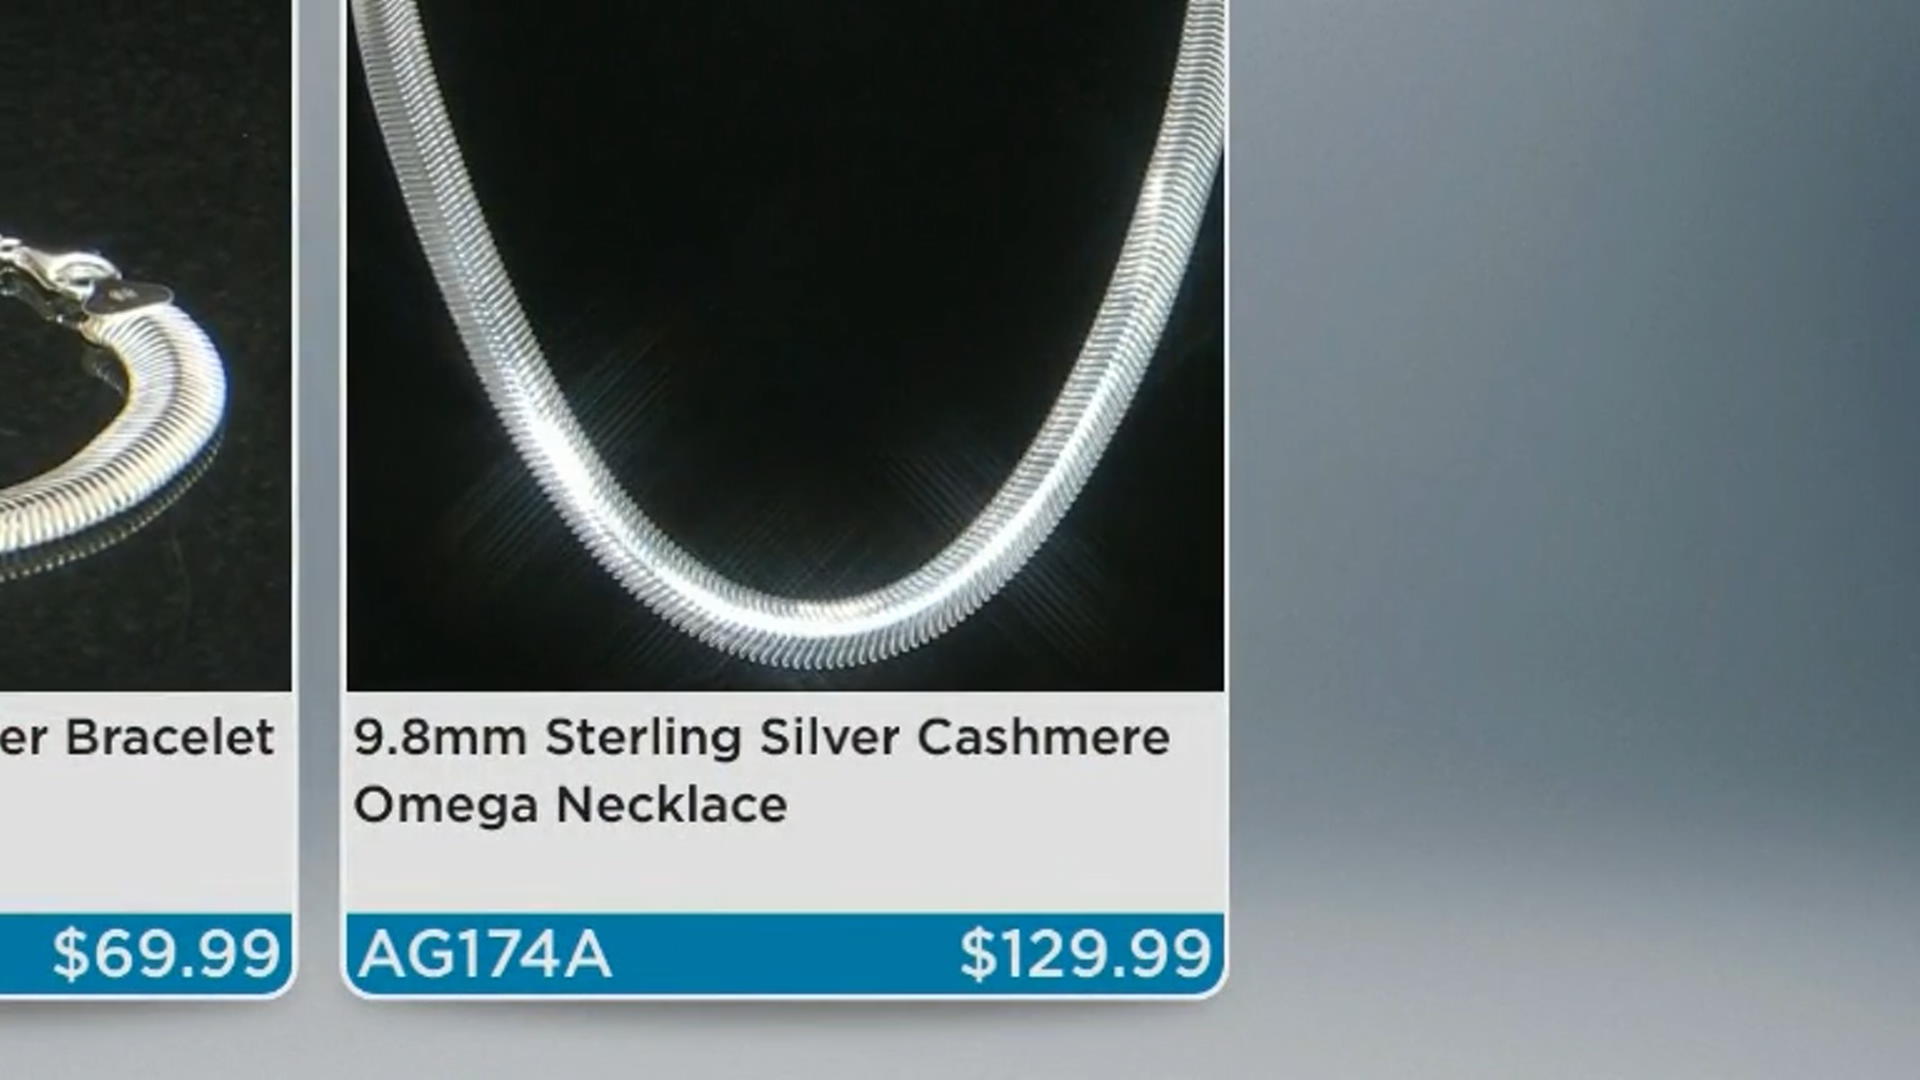 Sterling Silver Cashmere Bracelet